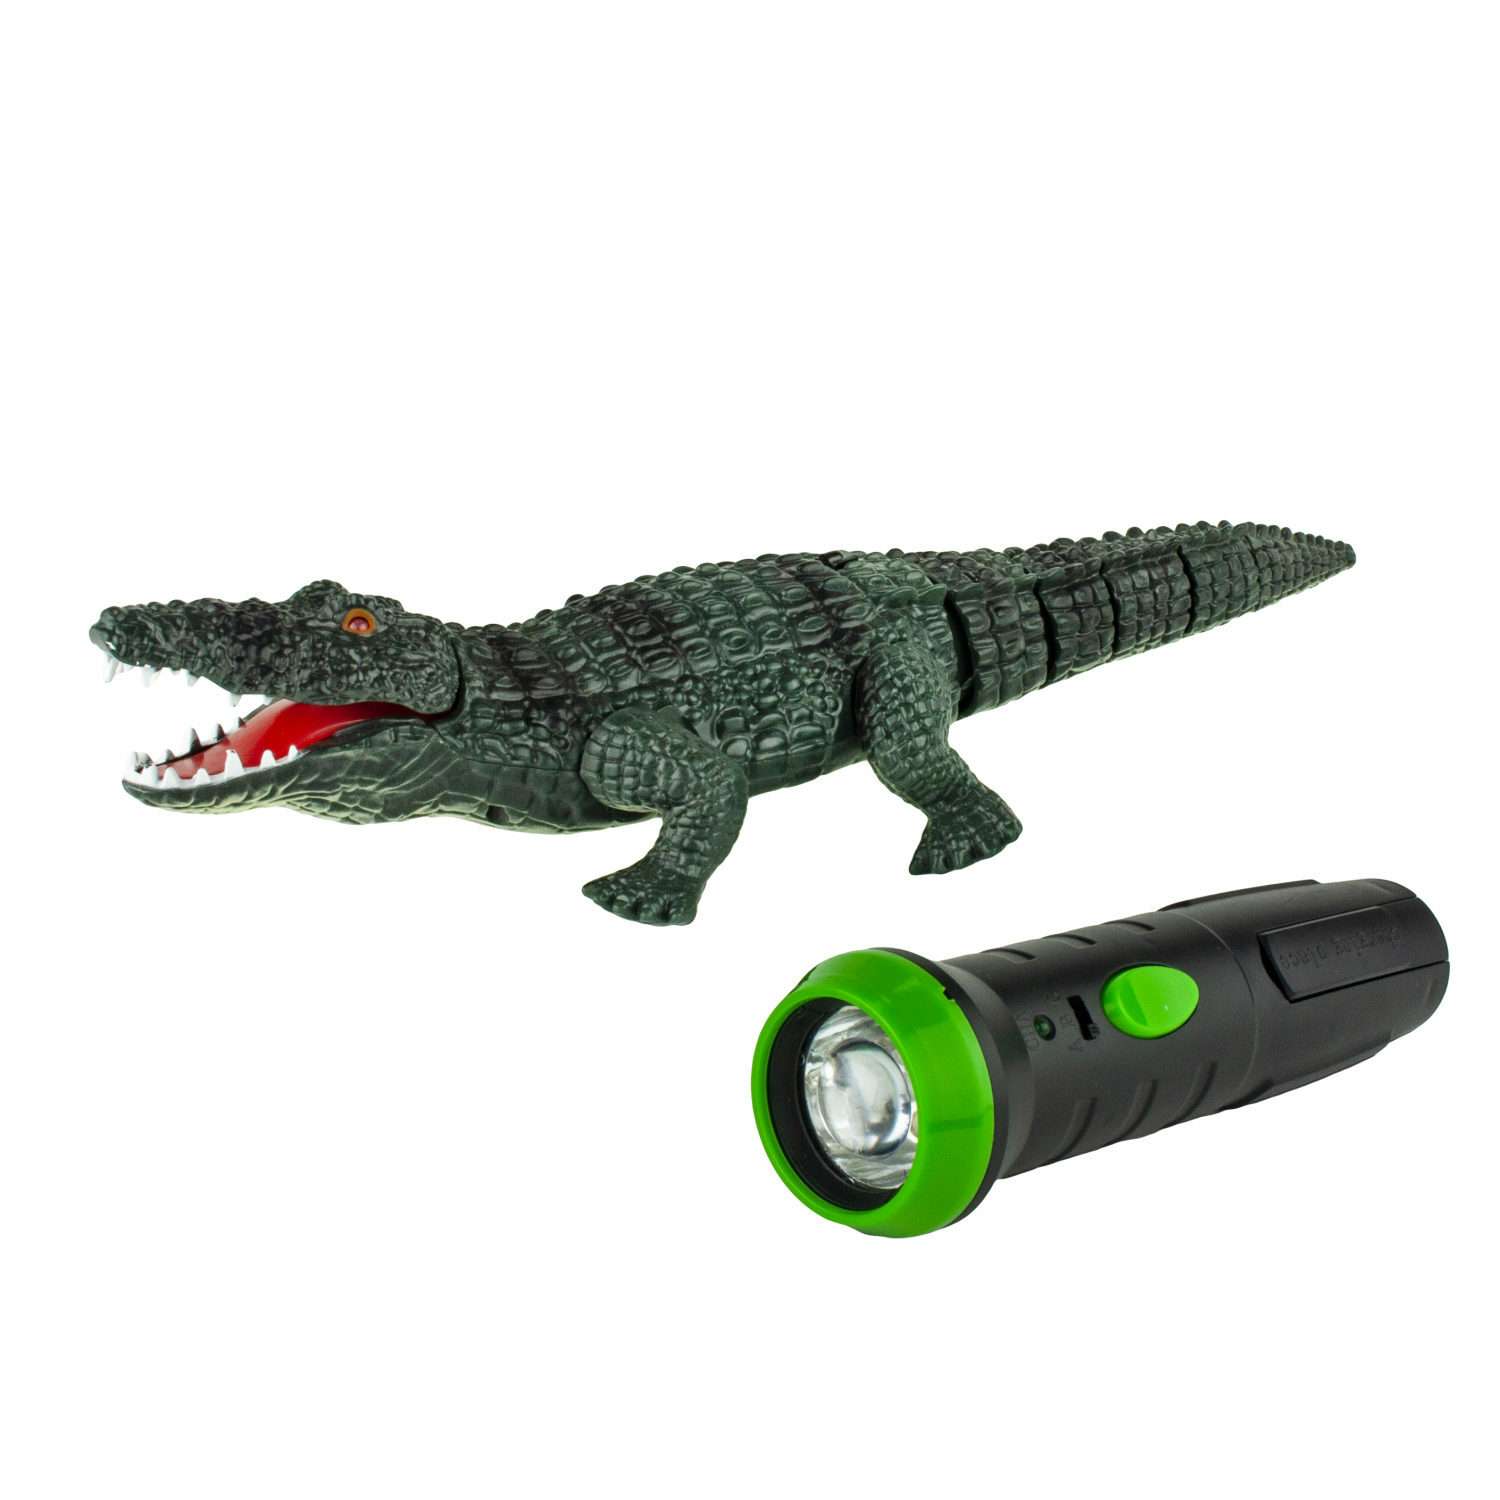 Интерактивная игрушка Robo Life Робо-Крокодил на ИК управлении со звуковыми световыми и эффектами движения - фото 2